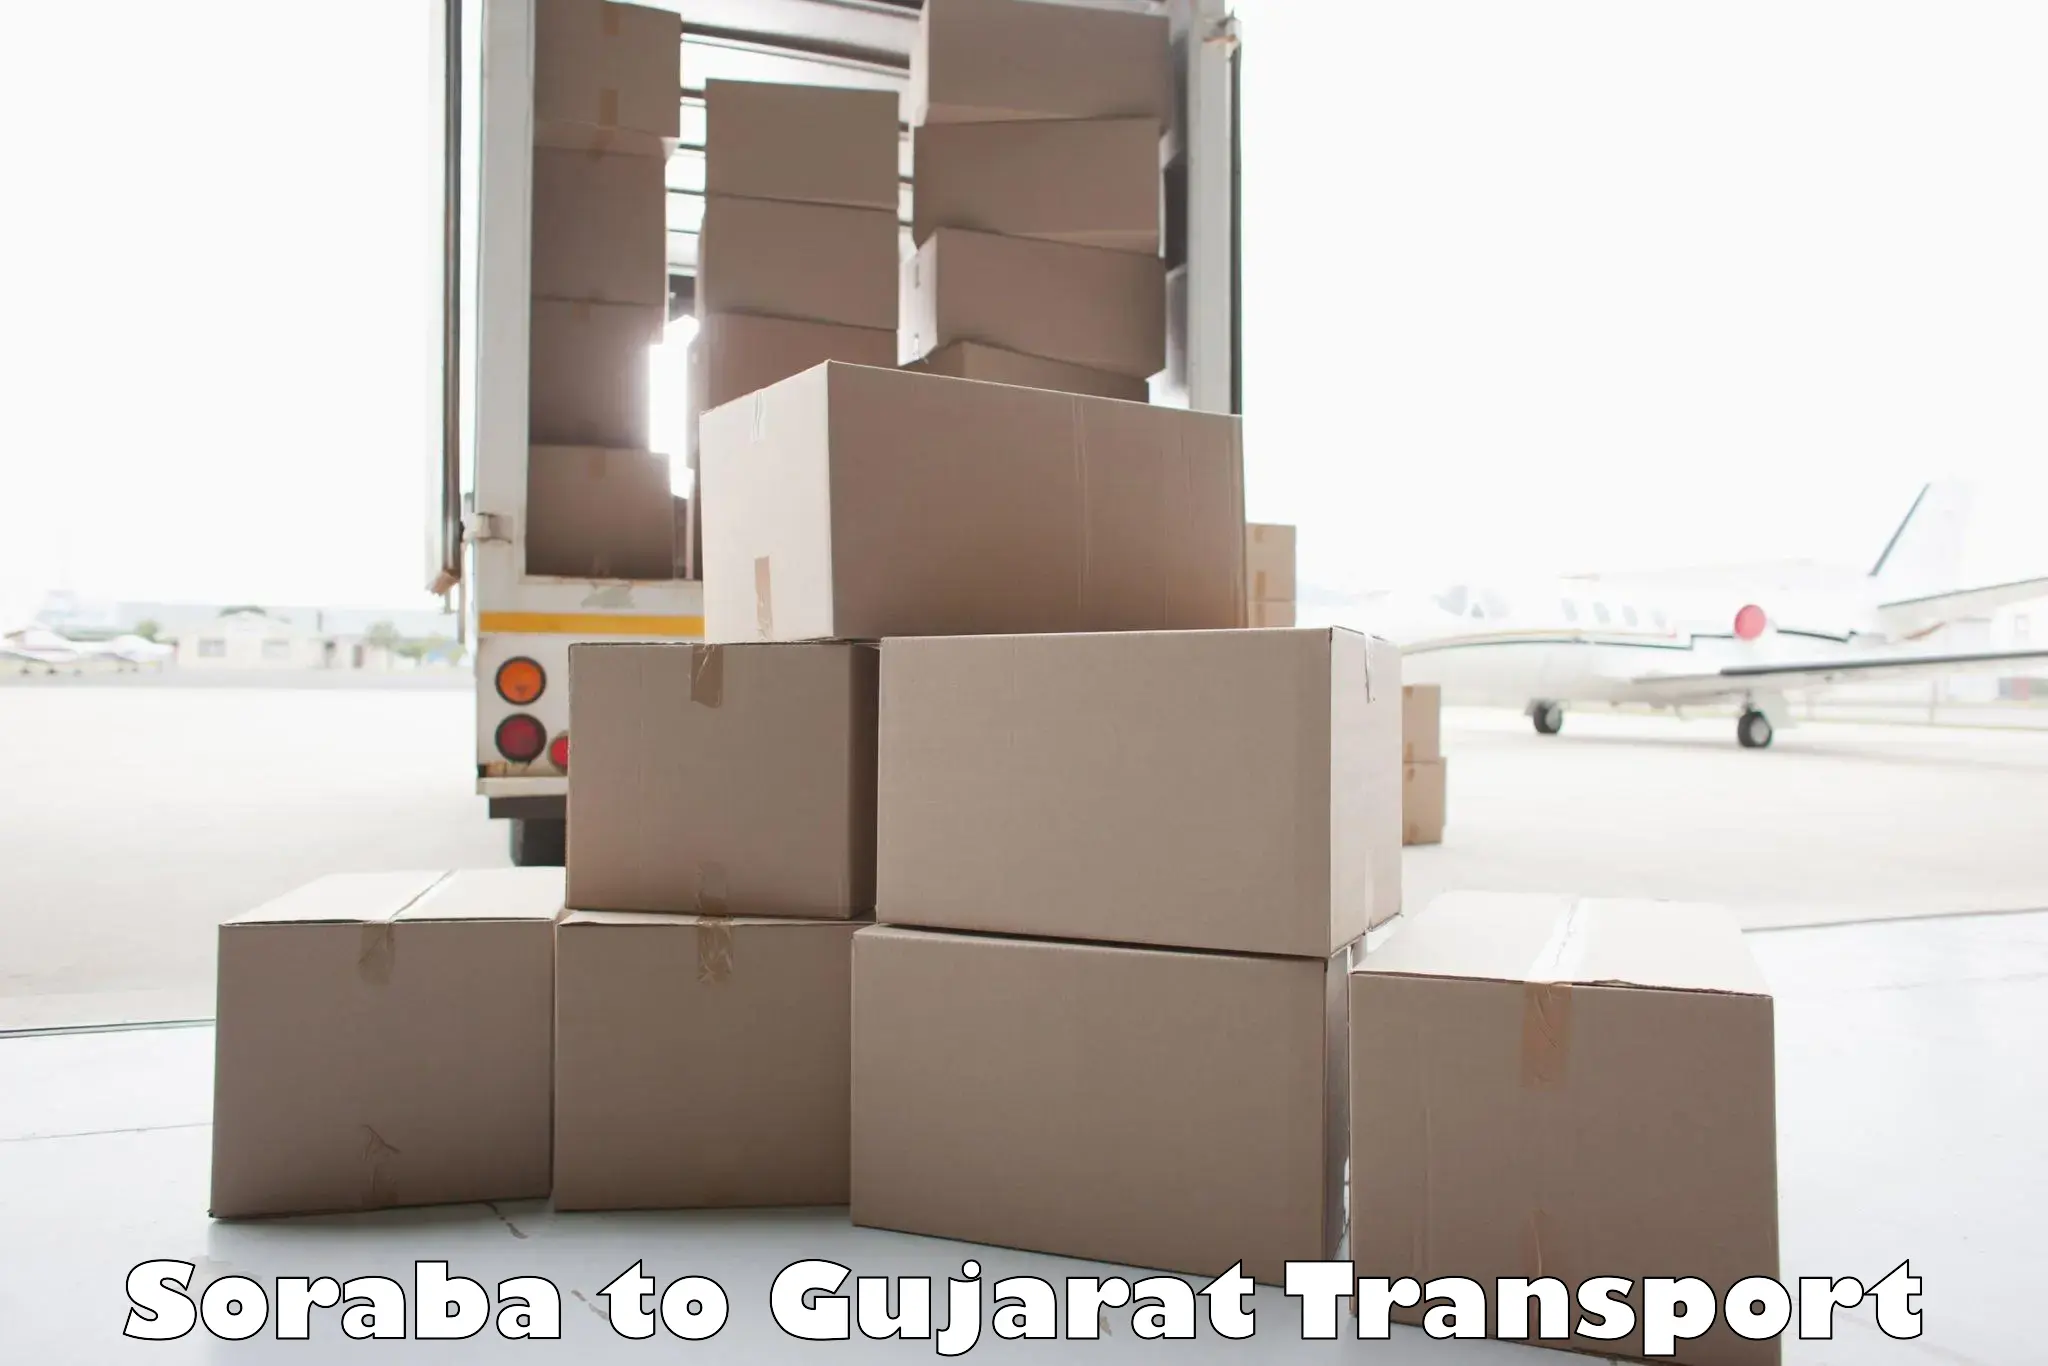 Transport in sharing in Soraba to Kalol Gujarat